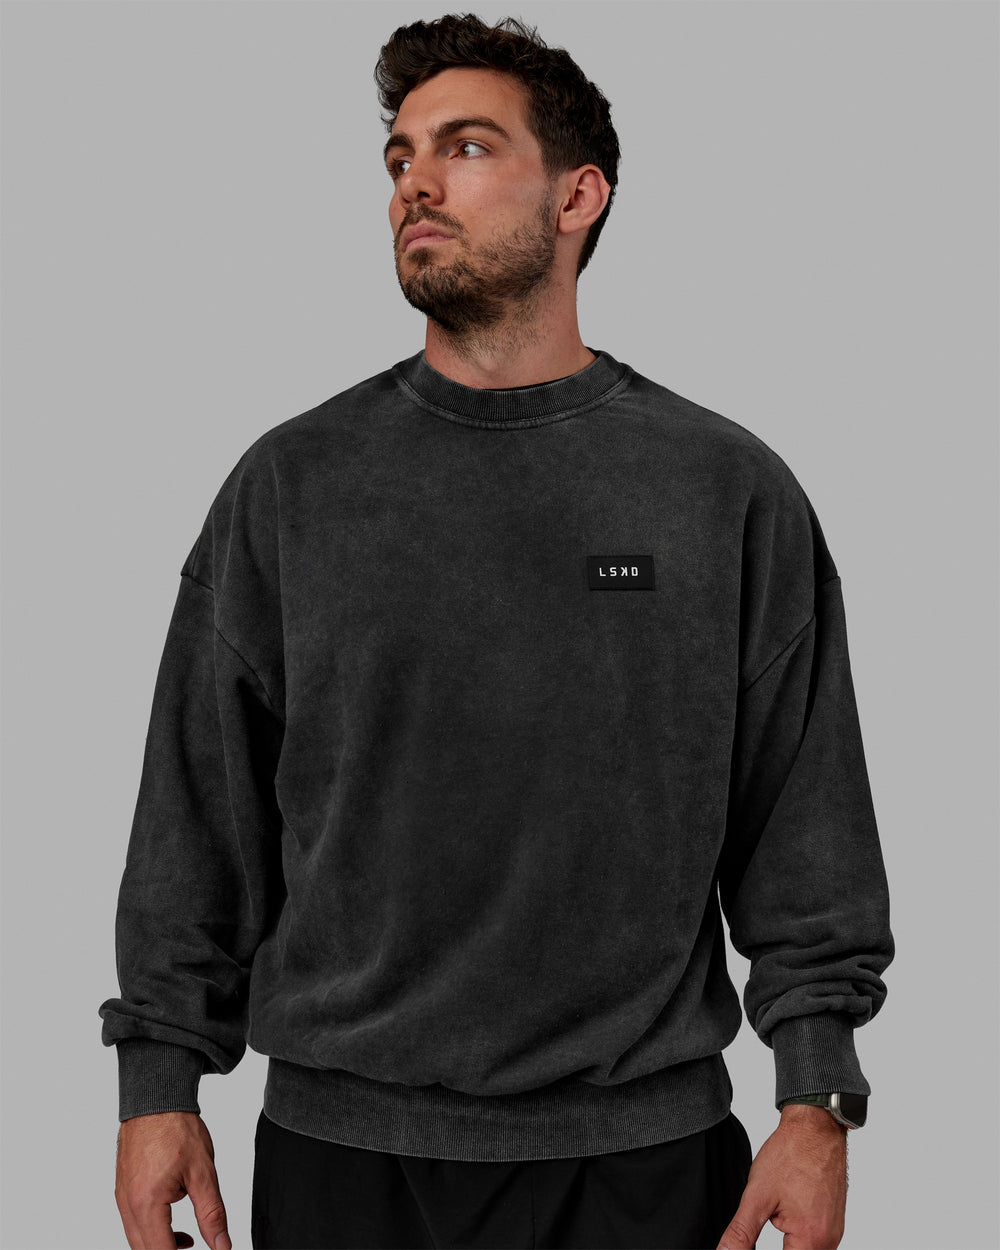 Man wearing Unisex Washed Segmented Oversized Sweater - Black